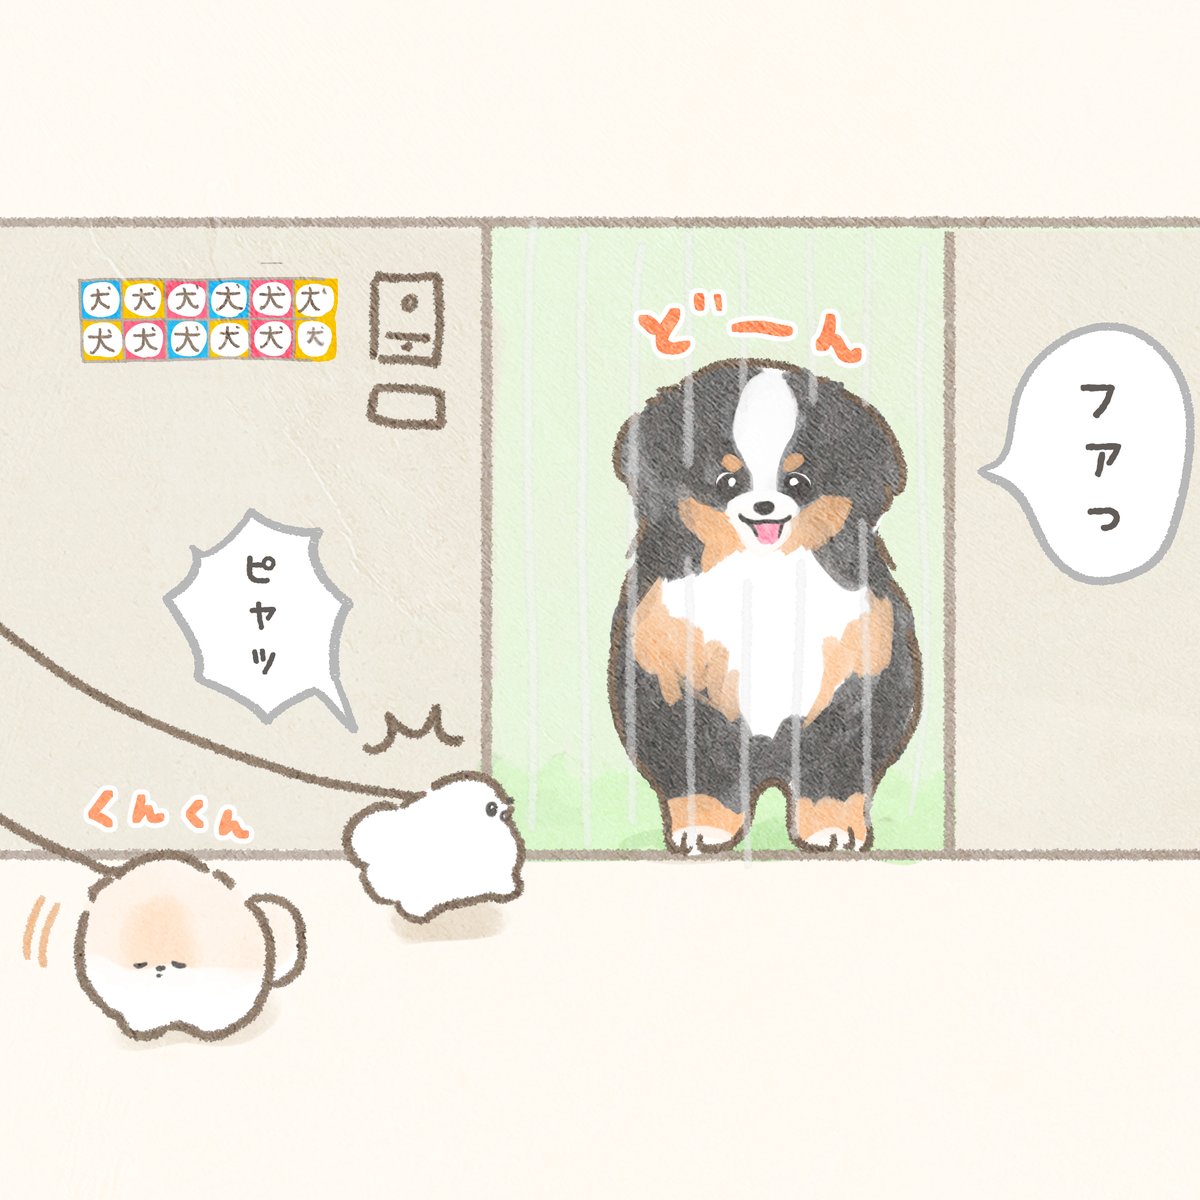 4コマ漫画「犬シール」 #ぽぽちとぱぴち